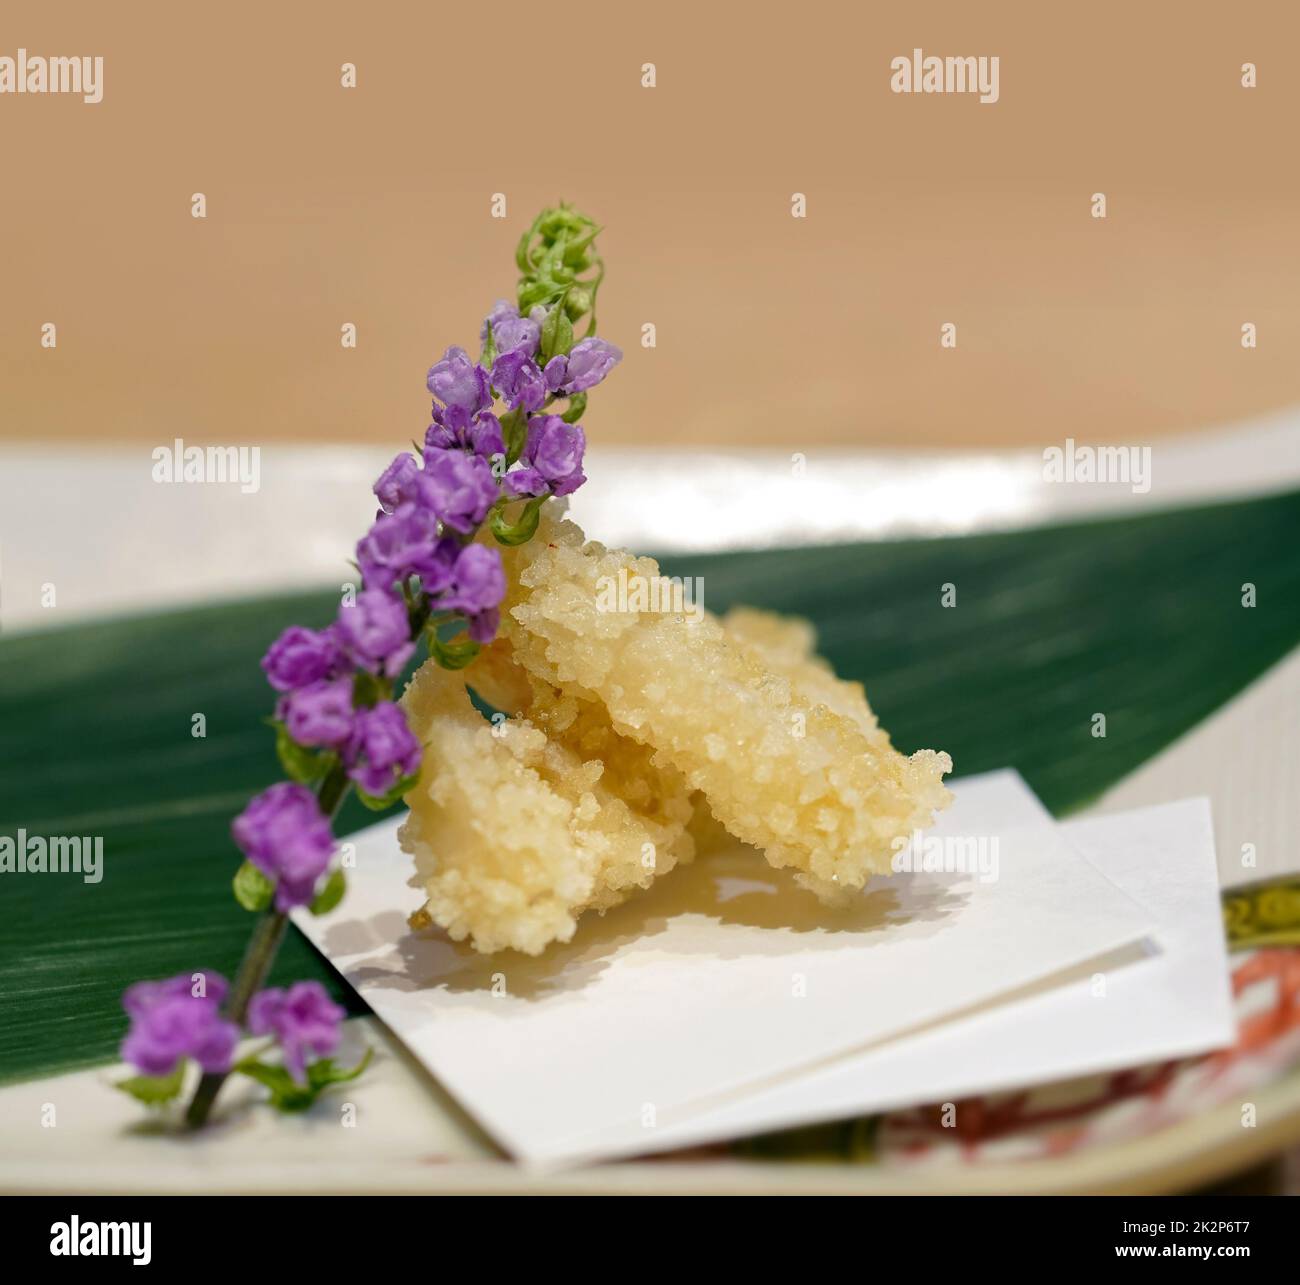 Tempura de poisson servi sur une assiette en céramique décorée de fleurs de la petite tortue et de feuilles de bambou. Menu d'apéritif Omakase au restaurant japonais Sushi. Banque D'Images